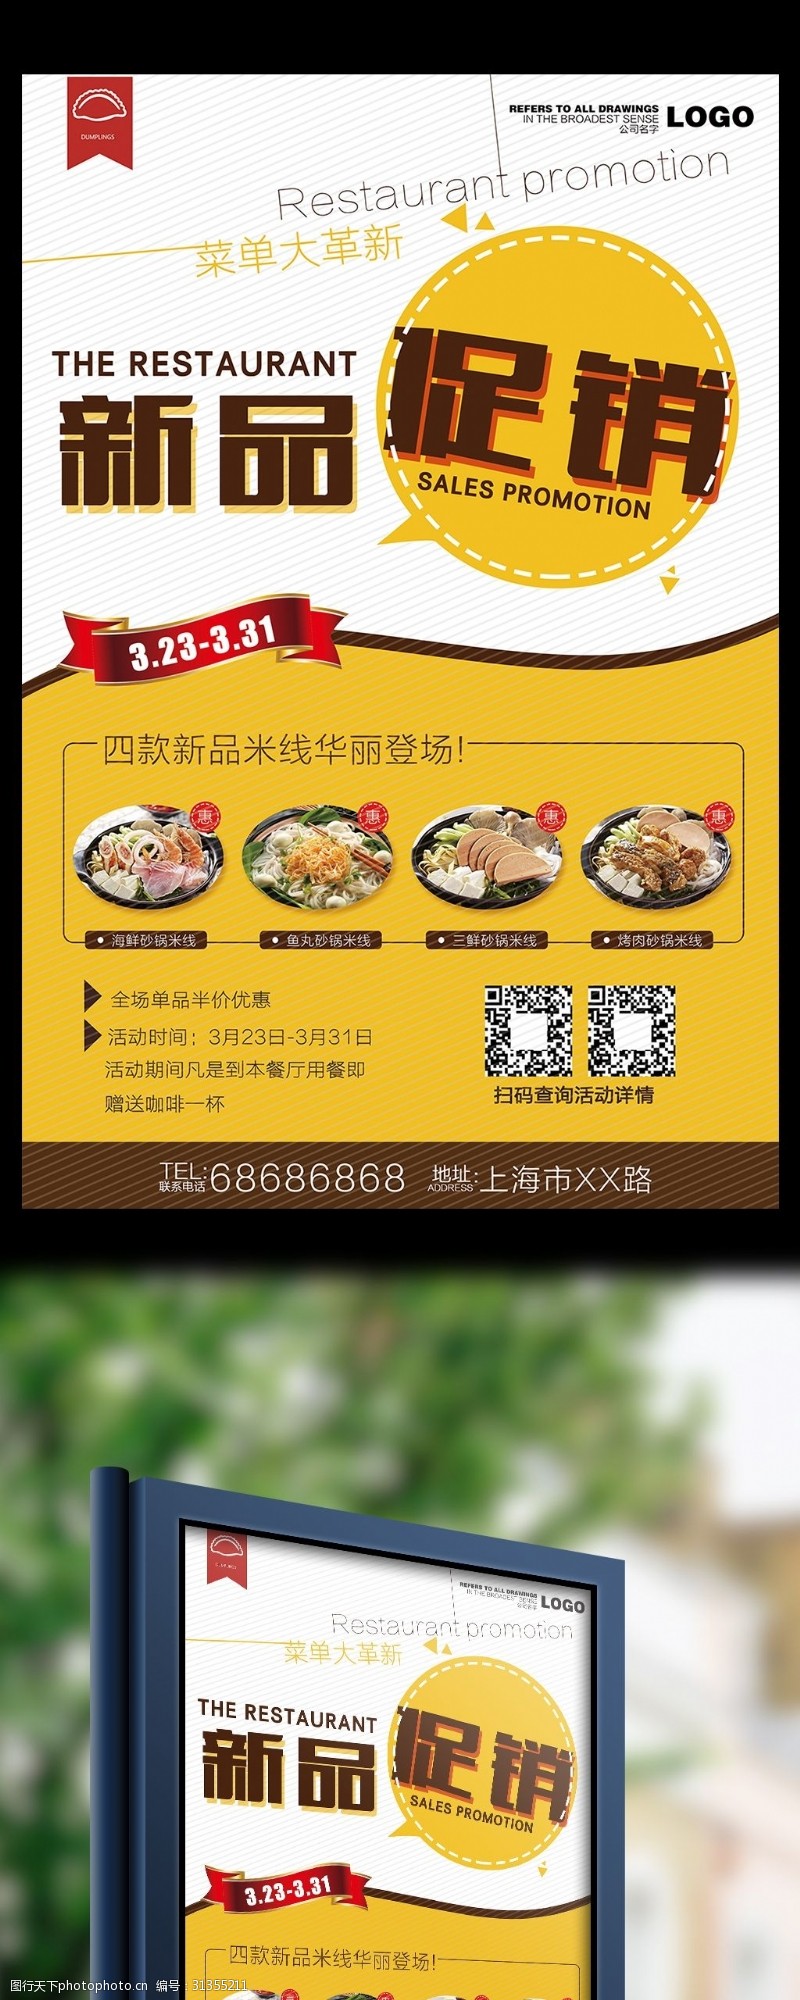 茶楼茶谱菜谱餐厅新品促销宣传海报设计